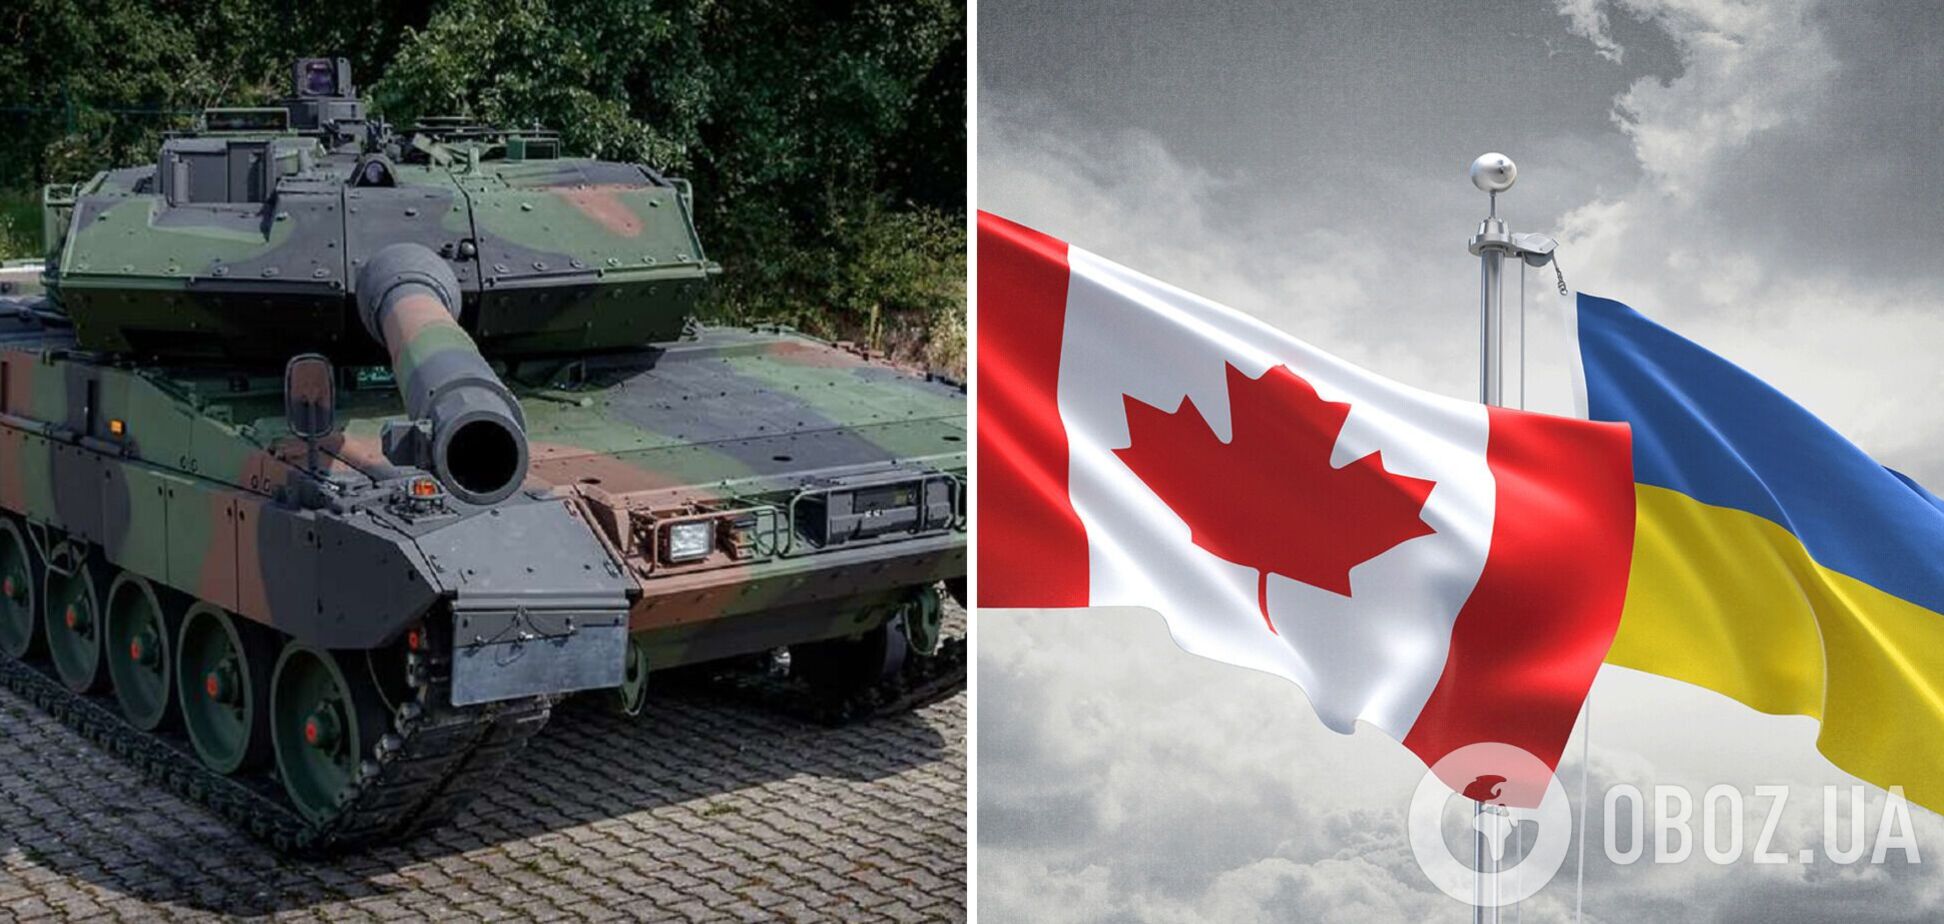 Канада готовится отправить в Украину танки Leopard, их количество пока неизвестно – Ottawa Citizen